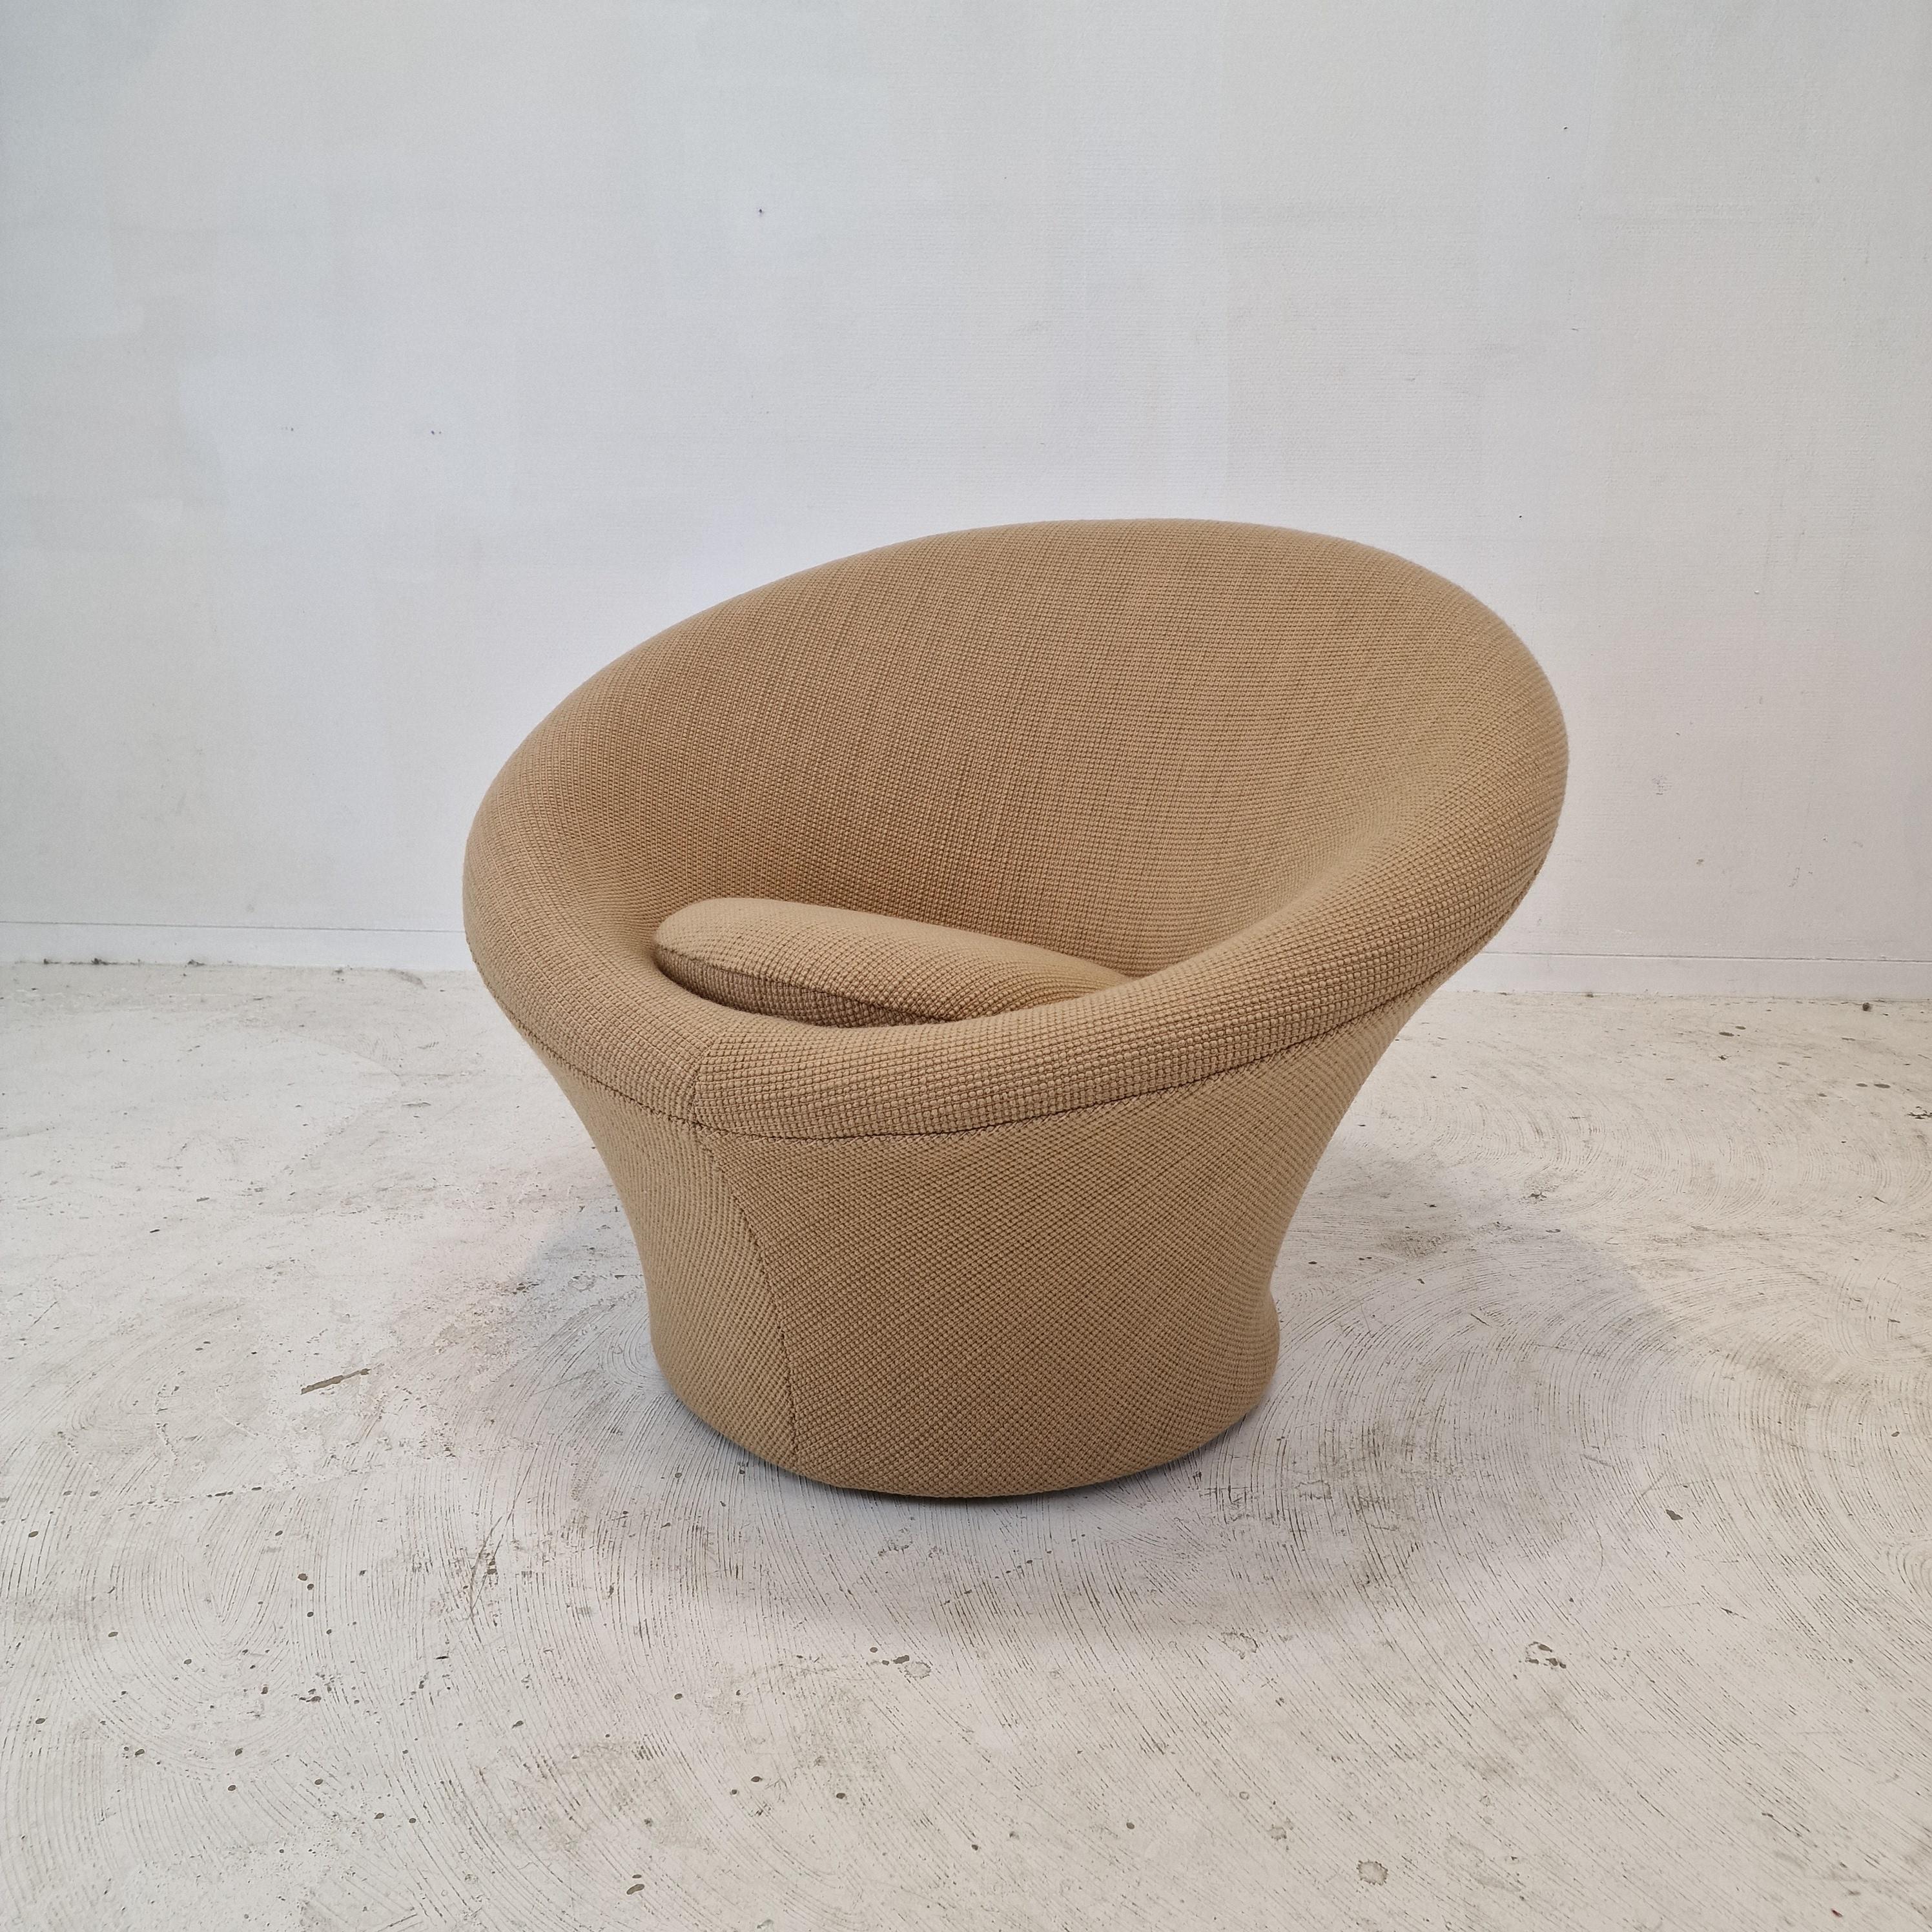 Sehr bequemer und gemütlicher Artifort Mushroom Stuhl, entworfen von Pierre Paulin in den 60er Jahren. 
Dieser besondere Stuhl wurde in den 80er Jahren hergestellt.

Bezogen mit sehr schönem Wollstoff.

Der Stuhl ist komplett mit neuem Stoff und